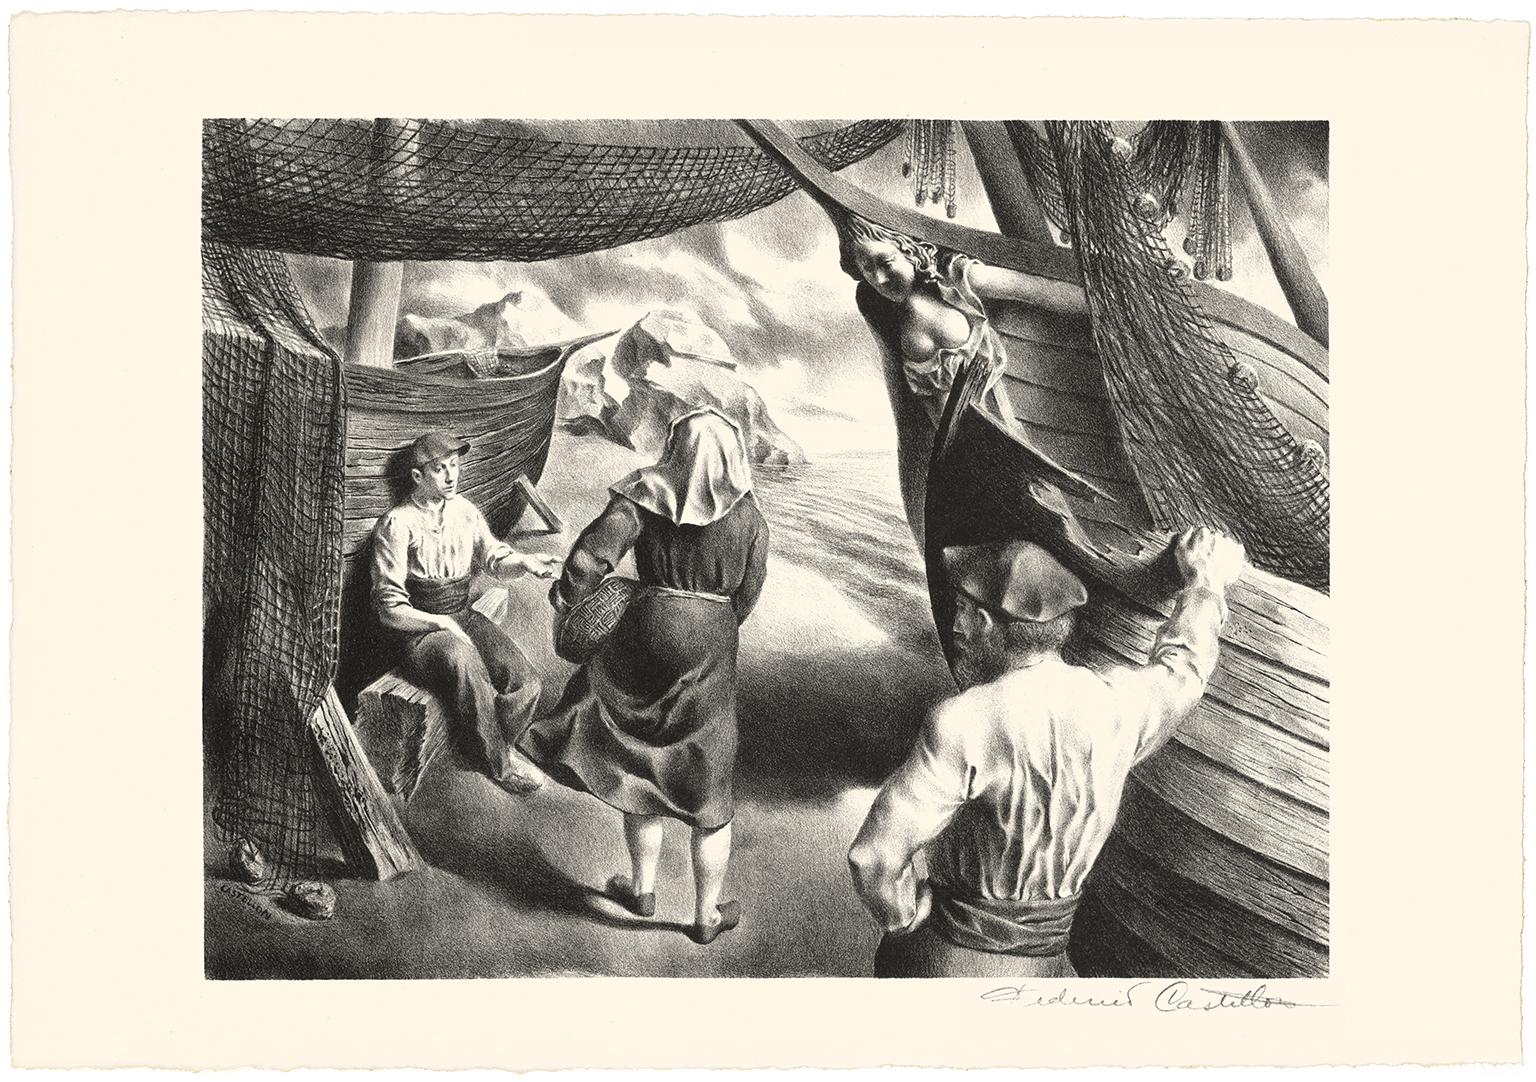 Surrealismus der Arks aus der Mitte des Jahrhunderts – Print von Federico Castellon